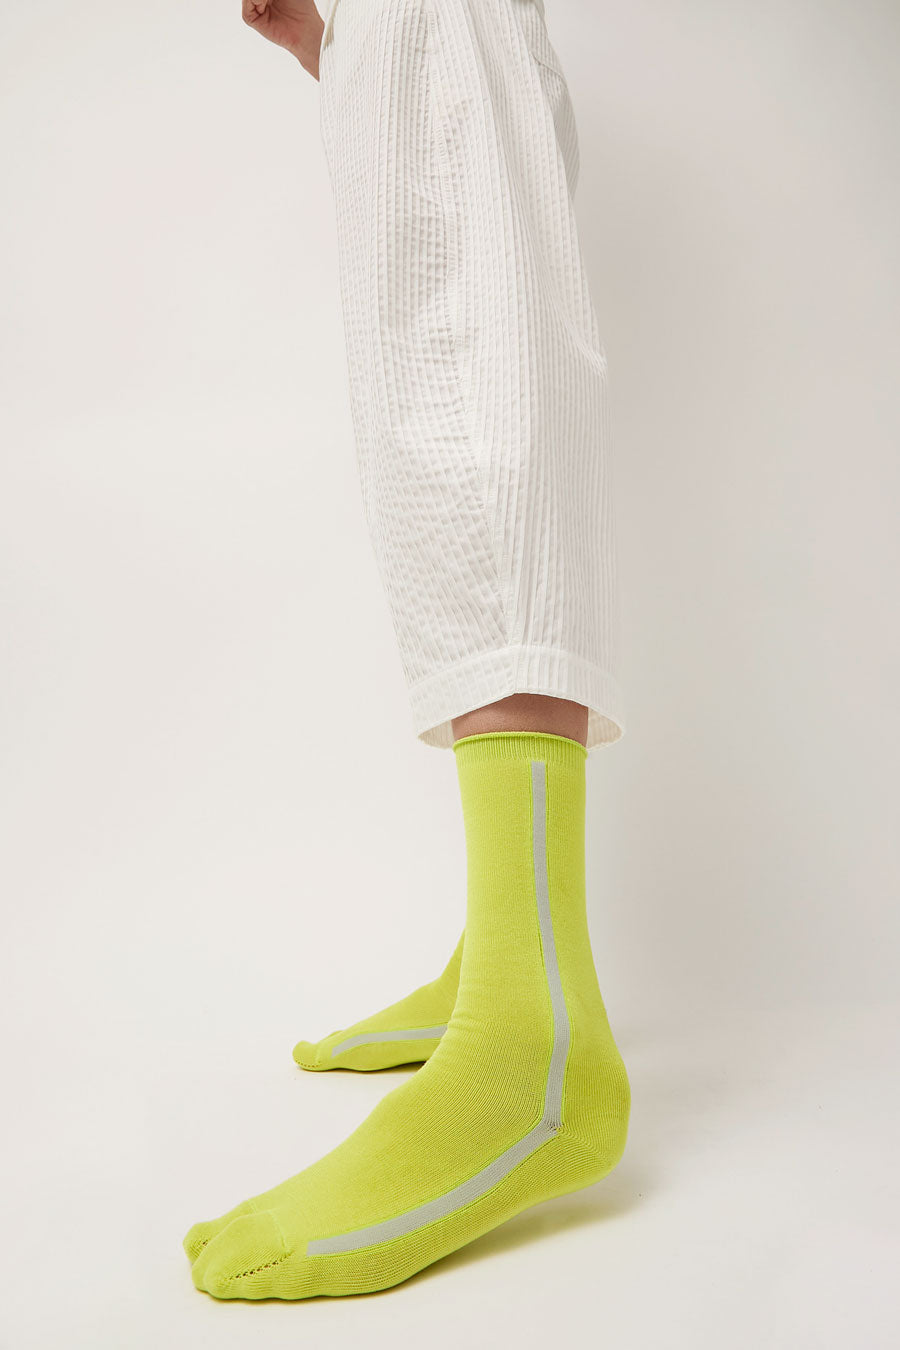 Tabito Tabi Line Socks in Yellow and Grey